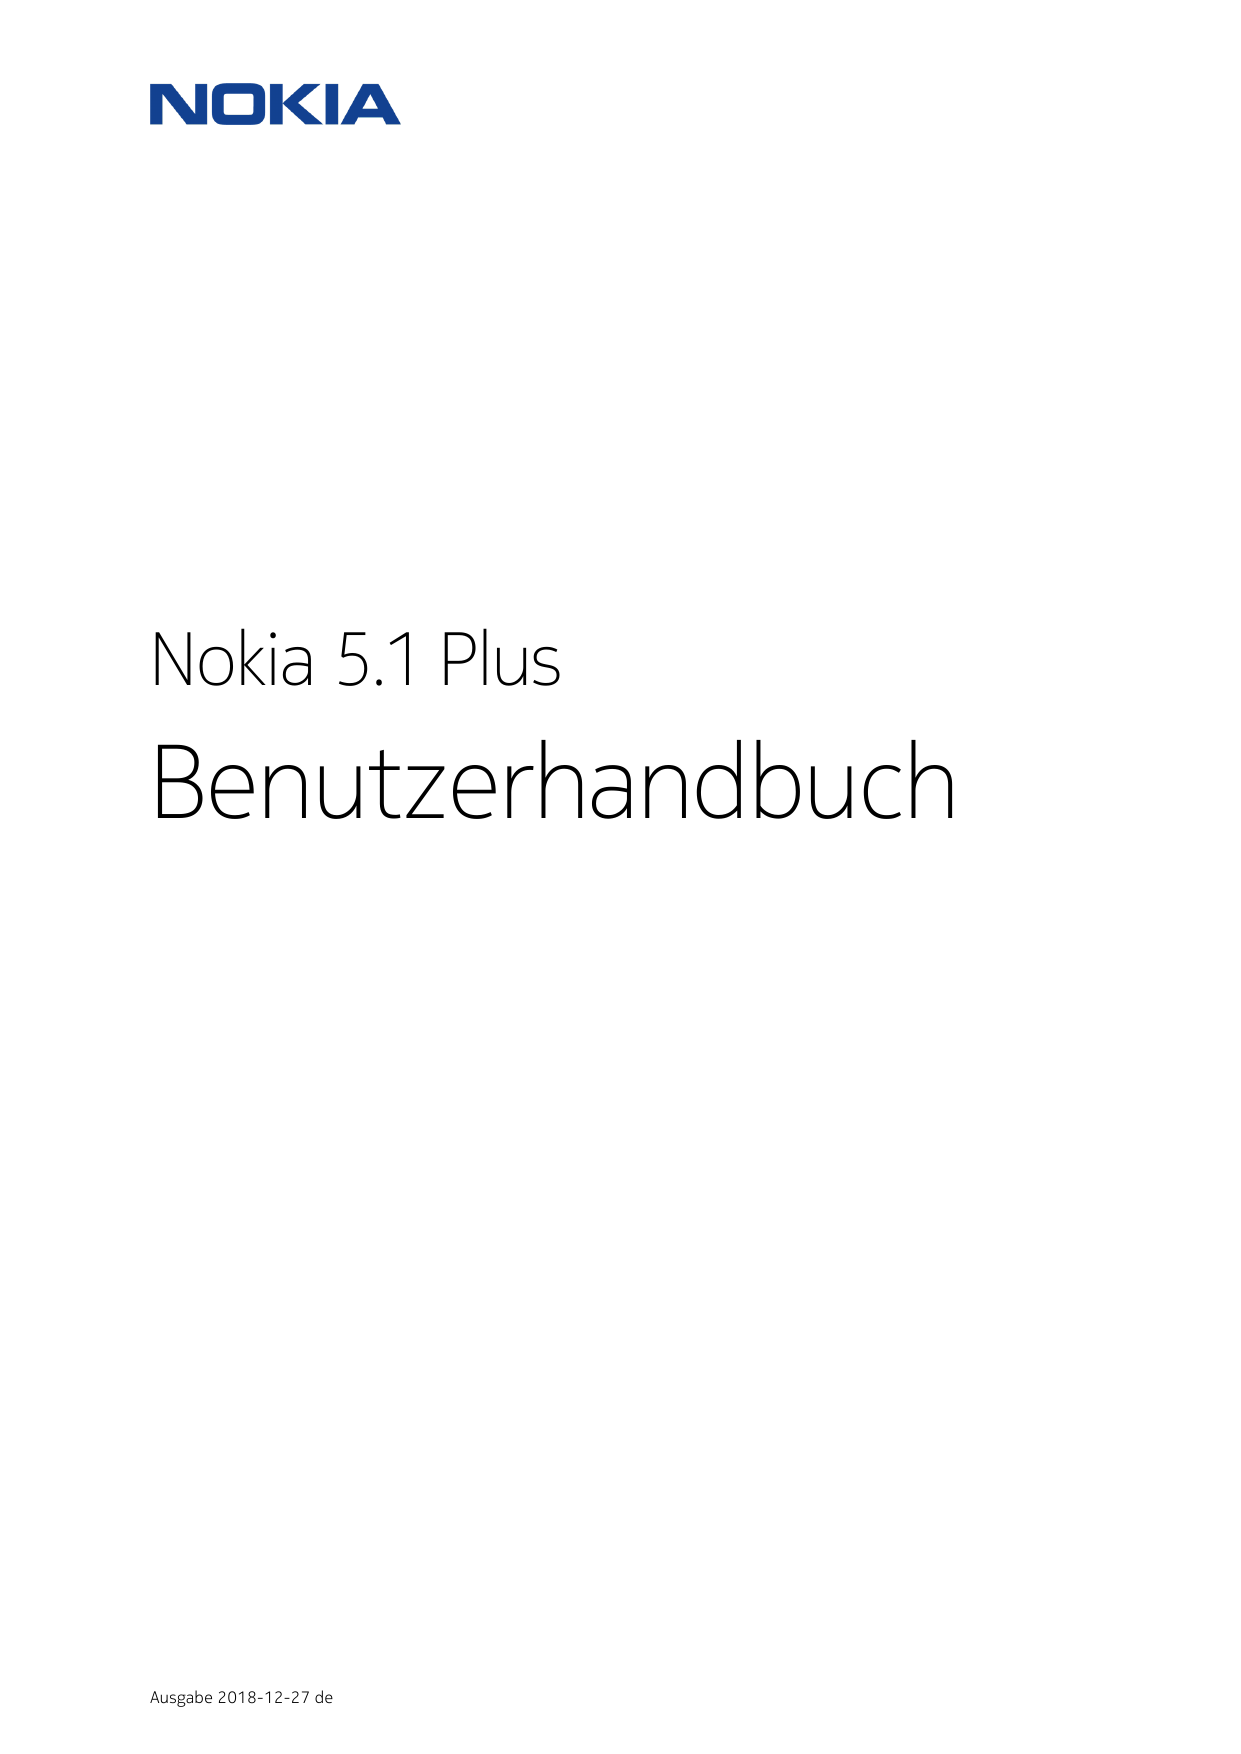 Nokia 5.1 PlusBenutzerhandbuchAusgabe 2018-12-27 de